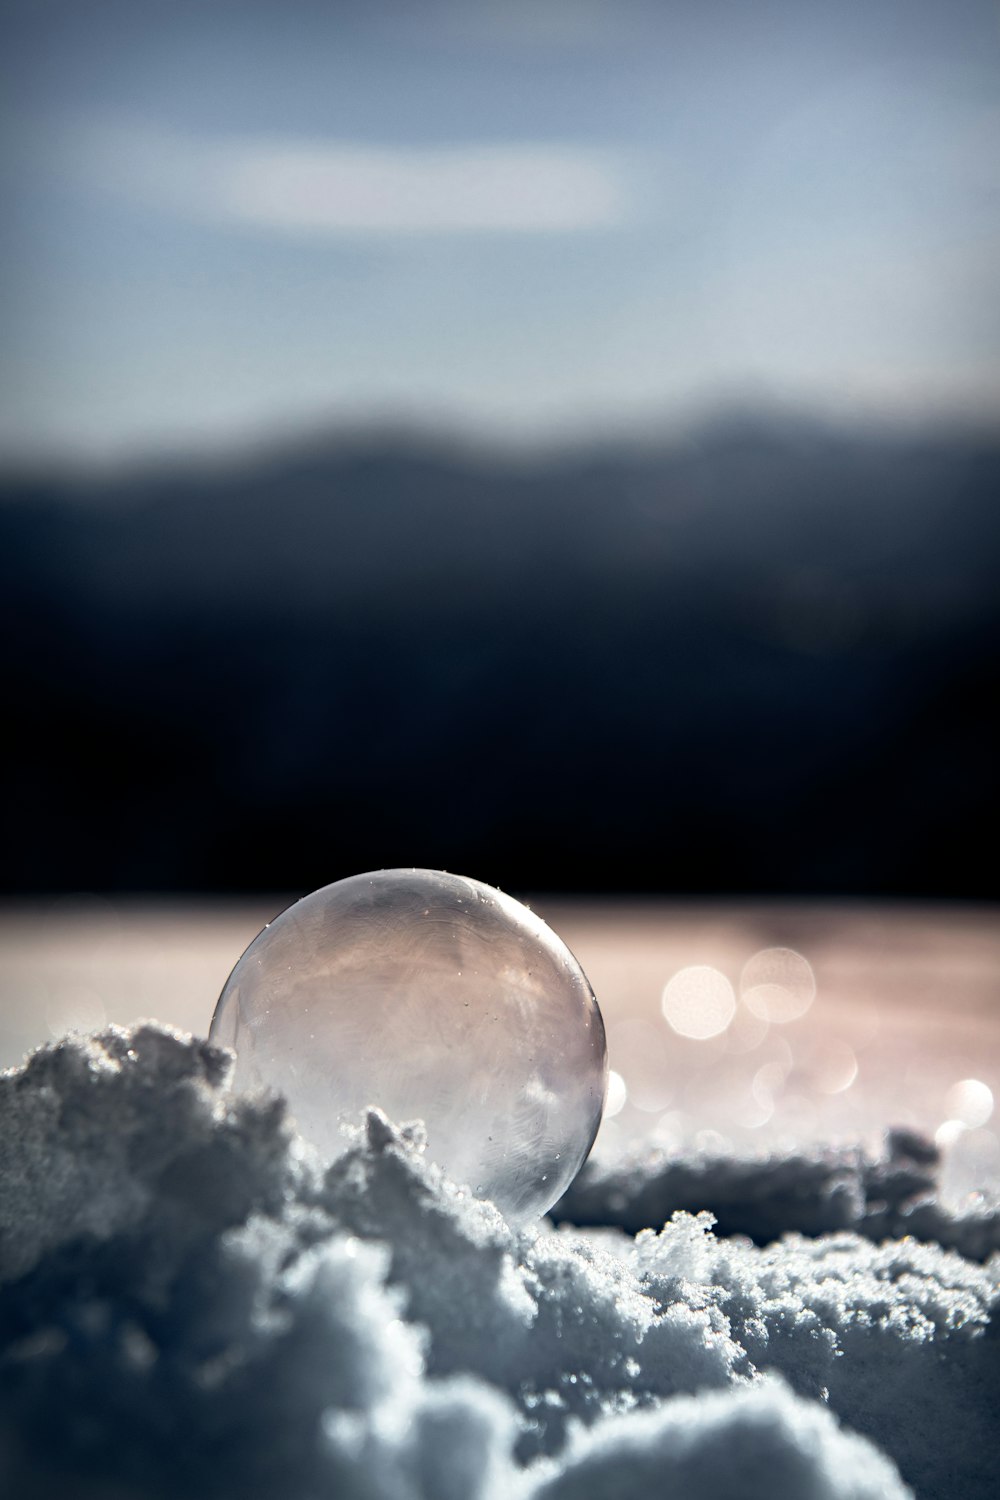 雪上の水滴のセレクティブフォーカス撮影